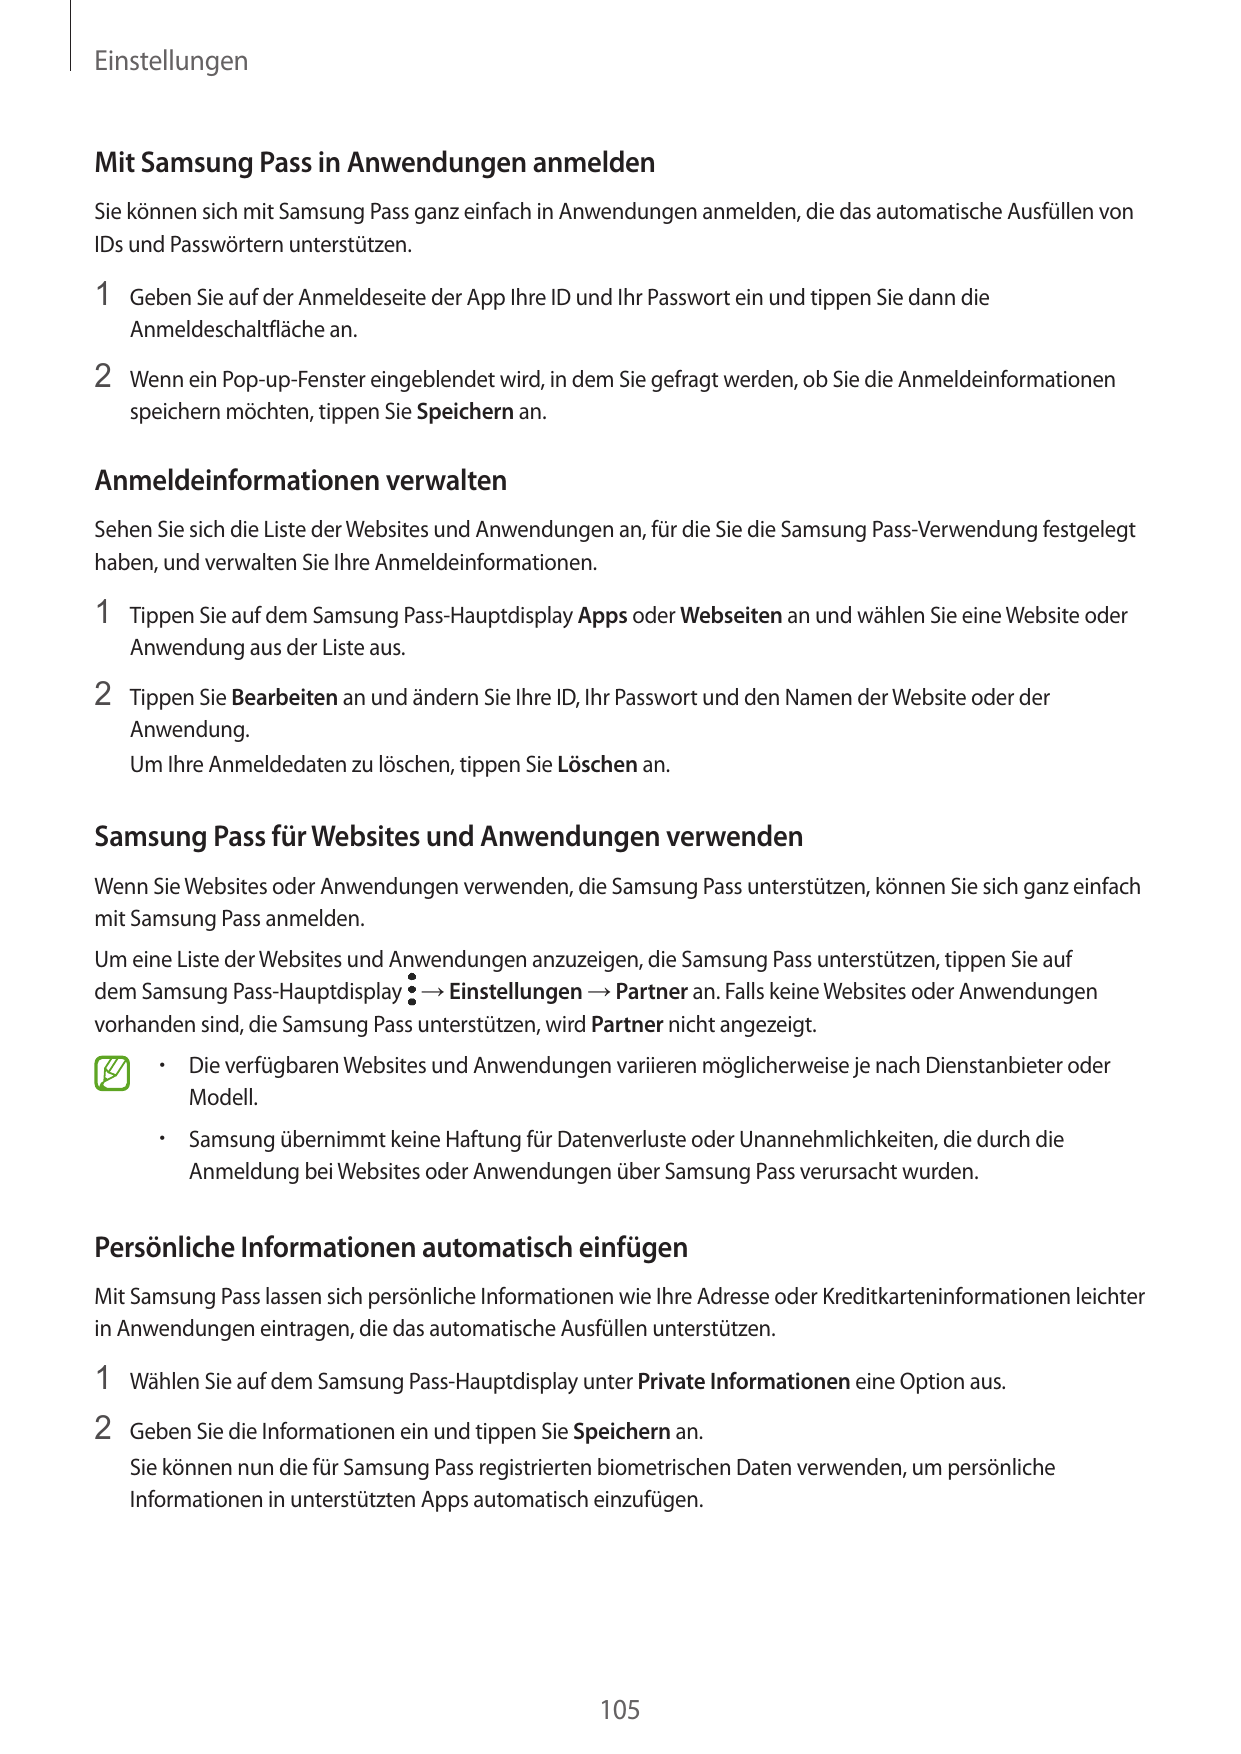 EinstellungenMit Samsung Pass in Anwendungen anmeldenSie können sich mit Samsung Pass ganz einfach in Anwendungen anmelden, die 